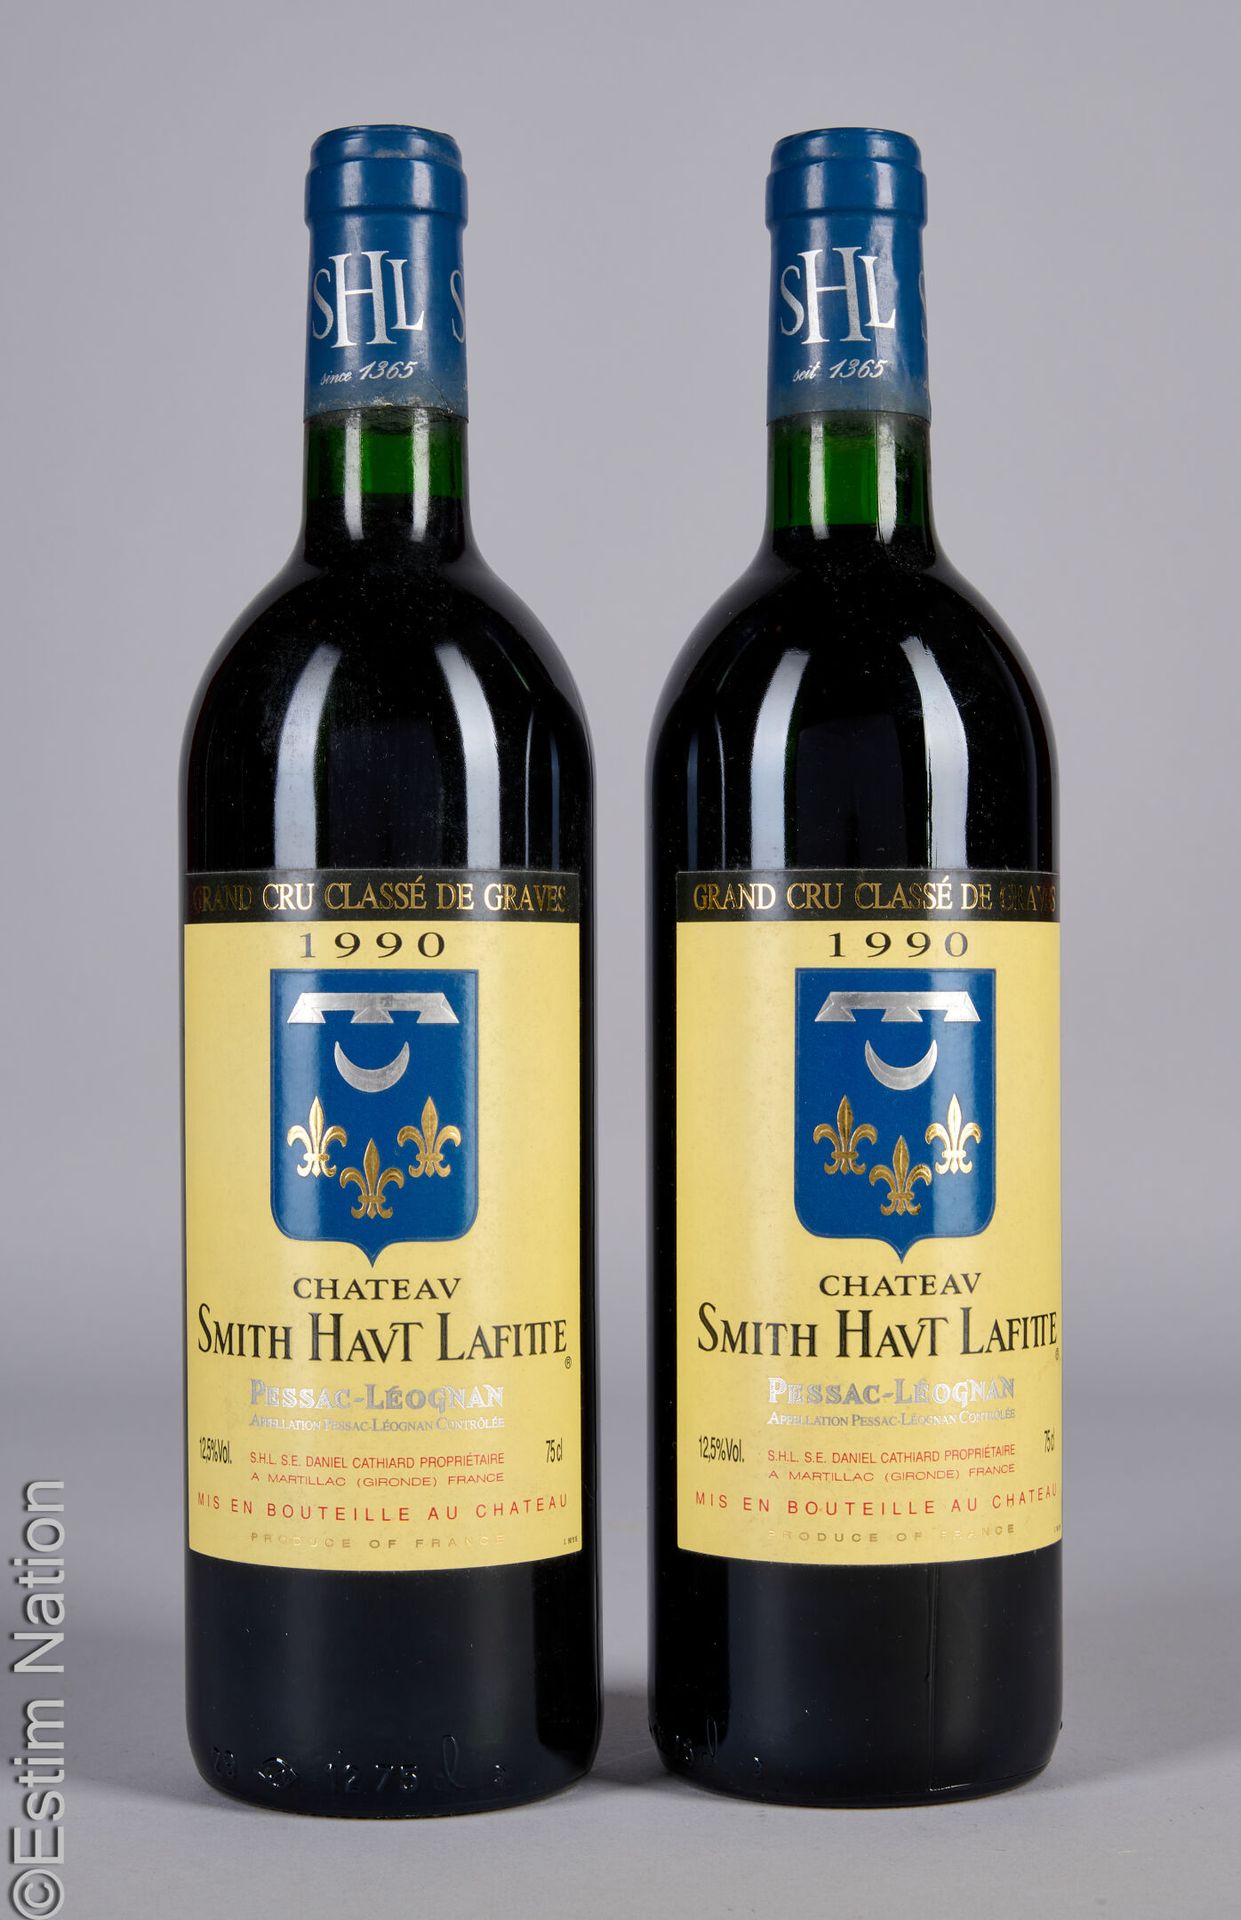 BORDEAUX 2 bouteilles CHÂTEAU SMITH HAUT LAFITTE 1990 Pessac-Leognan
(E. F, lm)